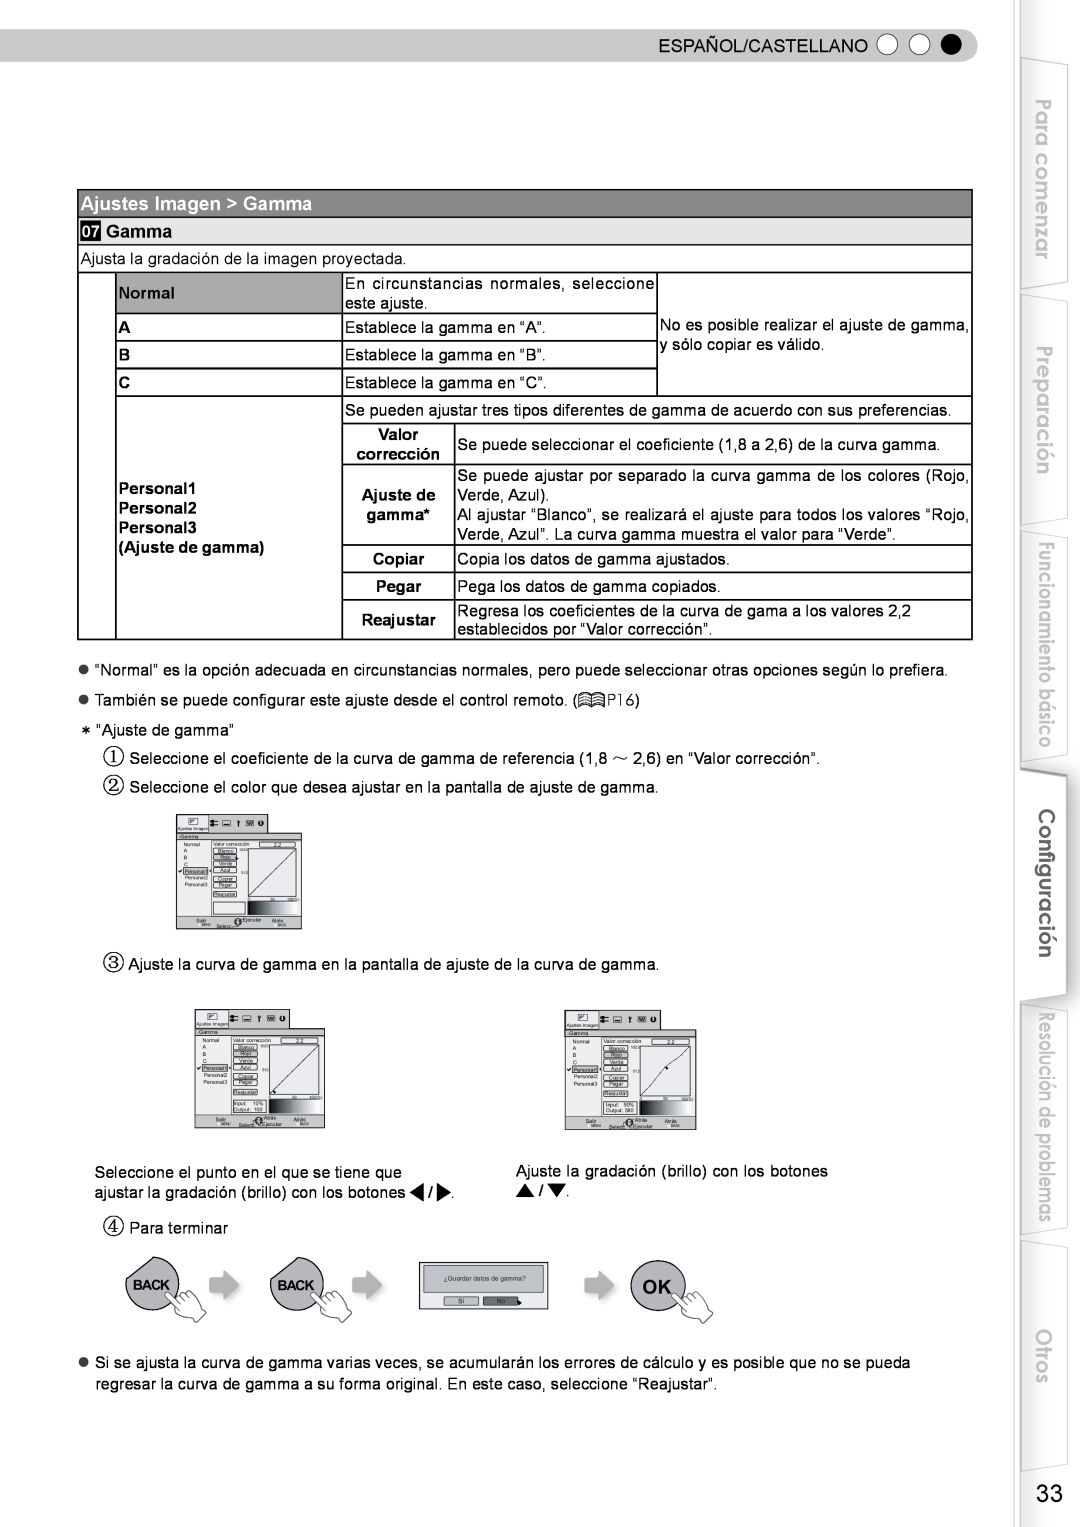 JVC DLA-RS10 manual Para comenzar, Otros, Ajustes Imagen Gamma, Español/Castellano, y sólo copiar es válido 